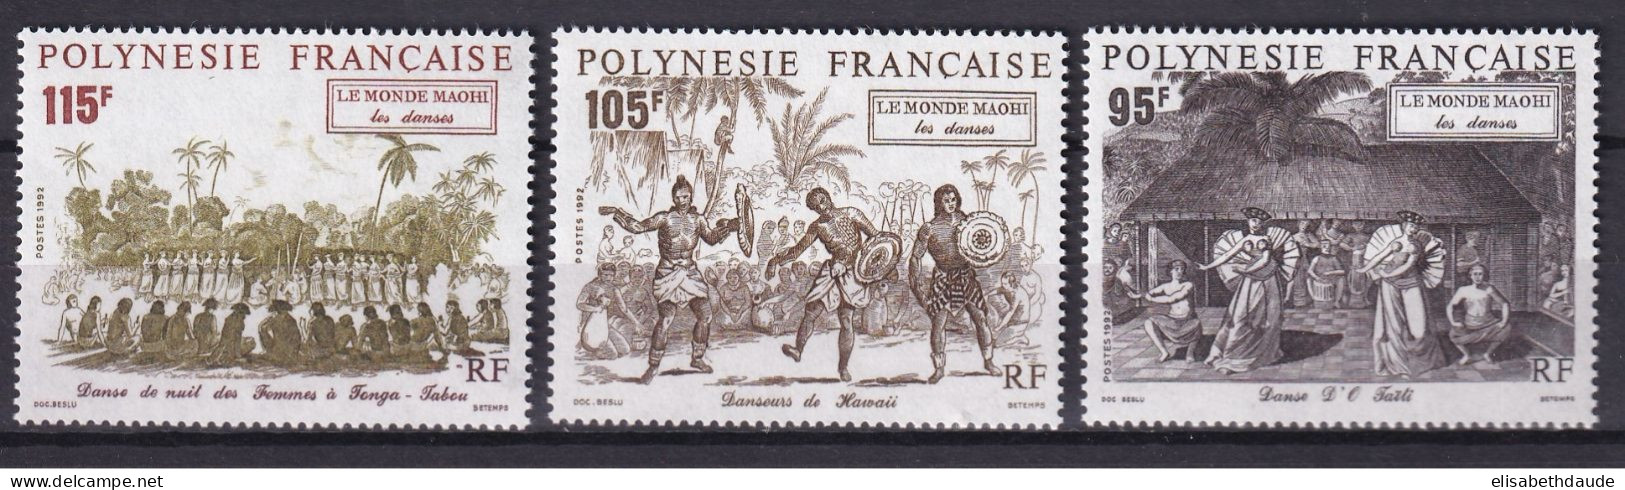 POLYNESIE - 1992 - PORT GRATUIT A PARTIR DE 5 EUR. D'ACHAT - YVERT N° 410/412 ** MNH - DANSES - COTE = 7.65 EUR. - Neufs